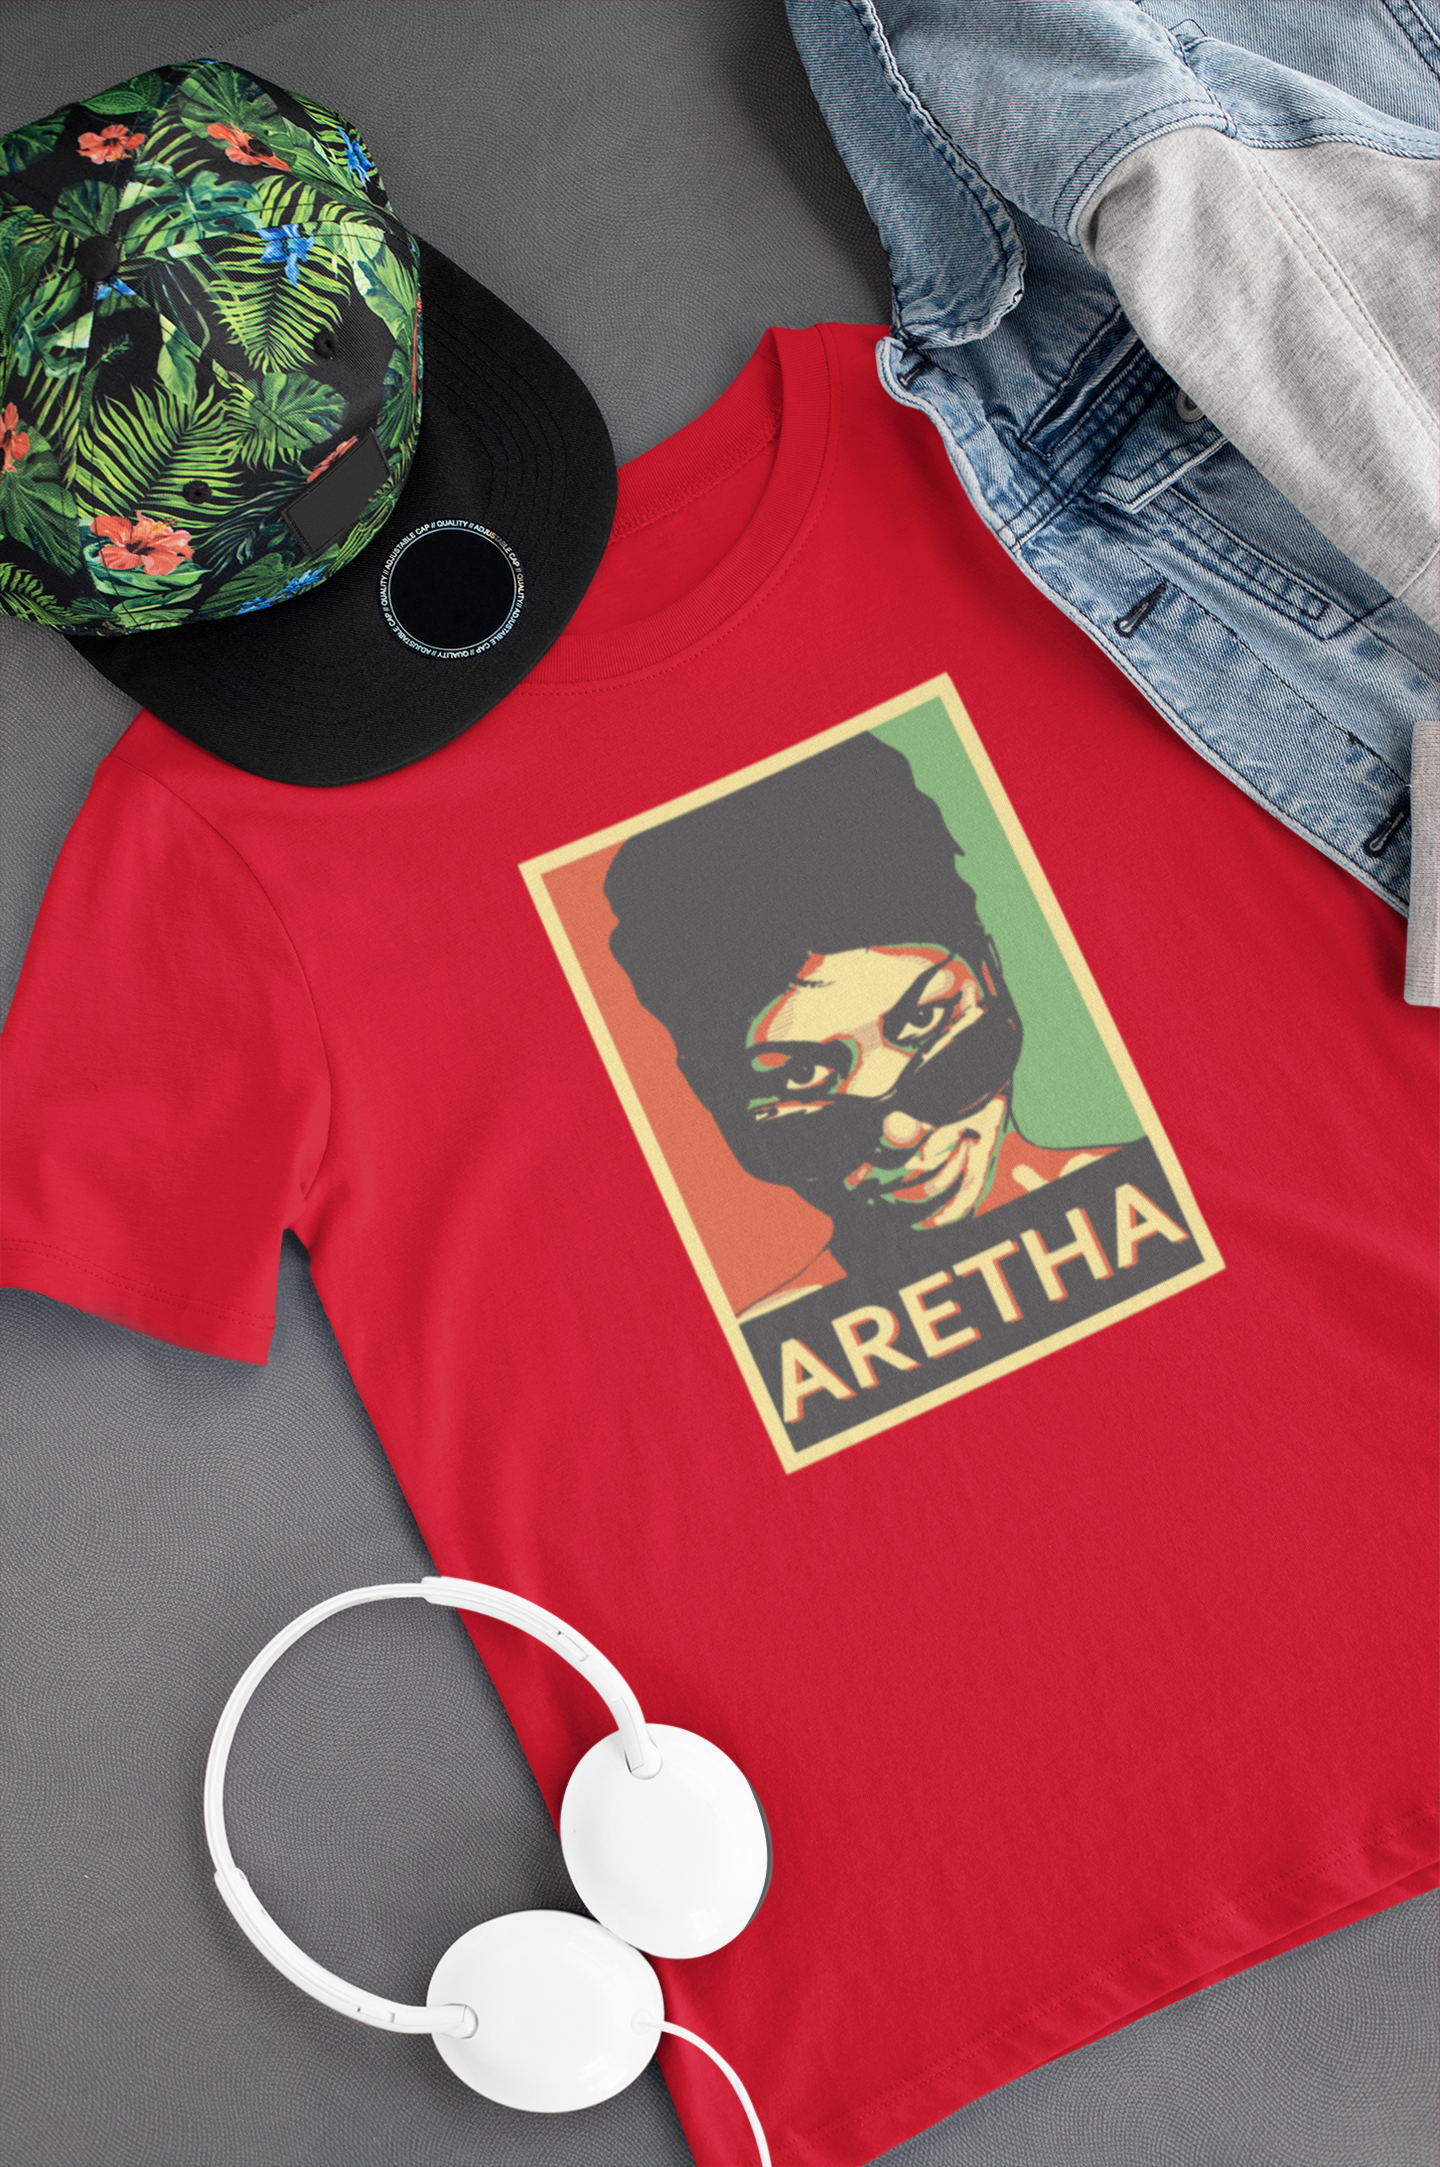 Camiseta "Aretha Franklin" Clássica - Música